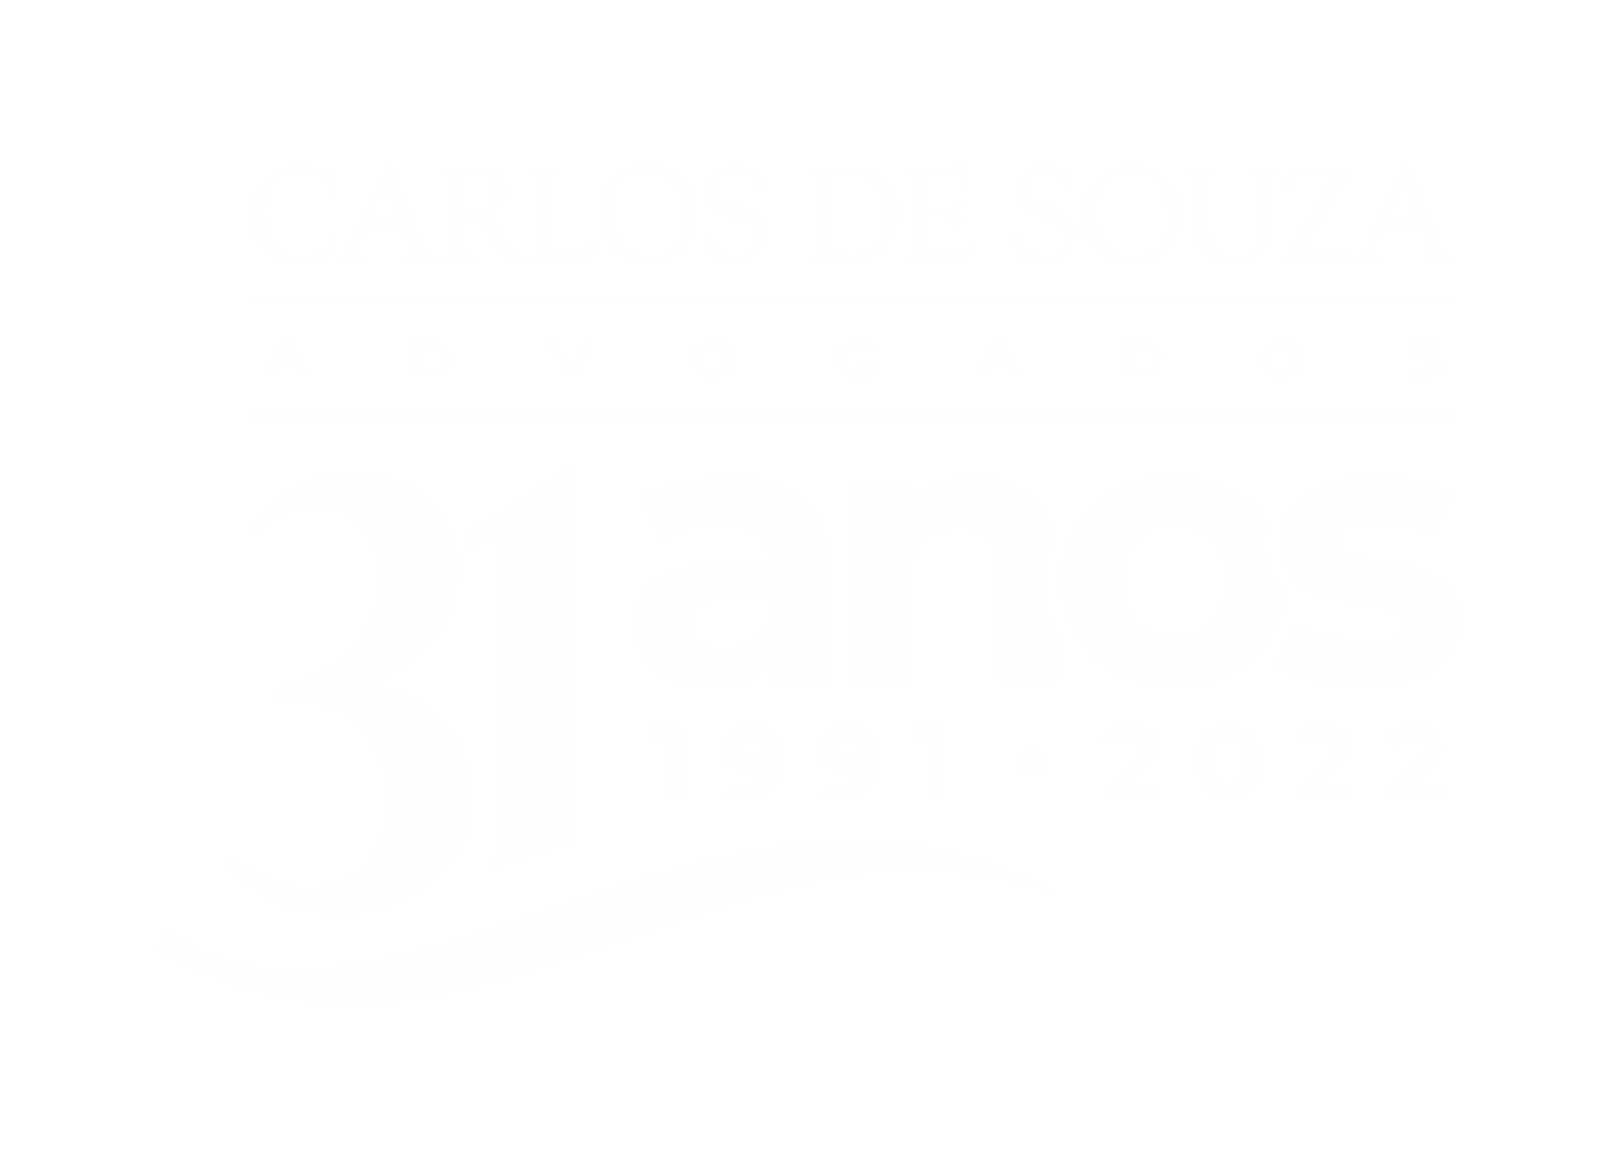 Carlos de Souza Advogados